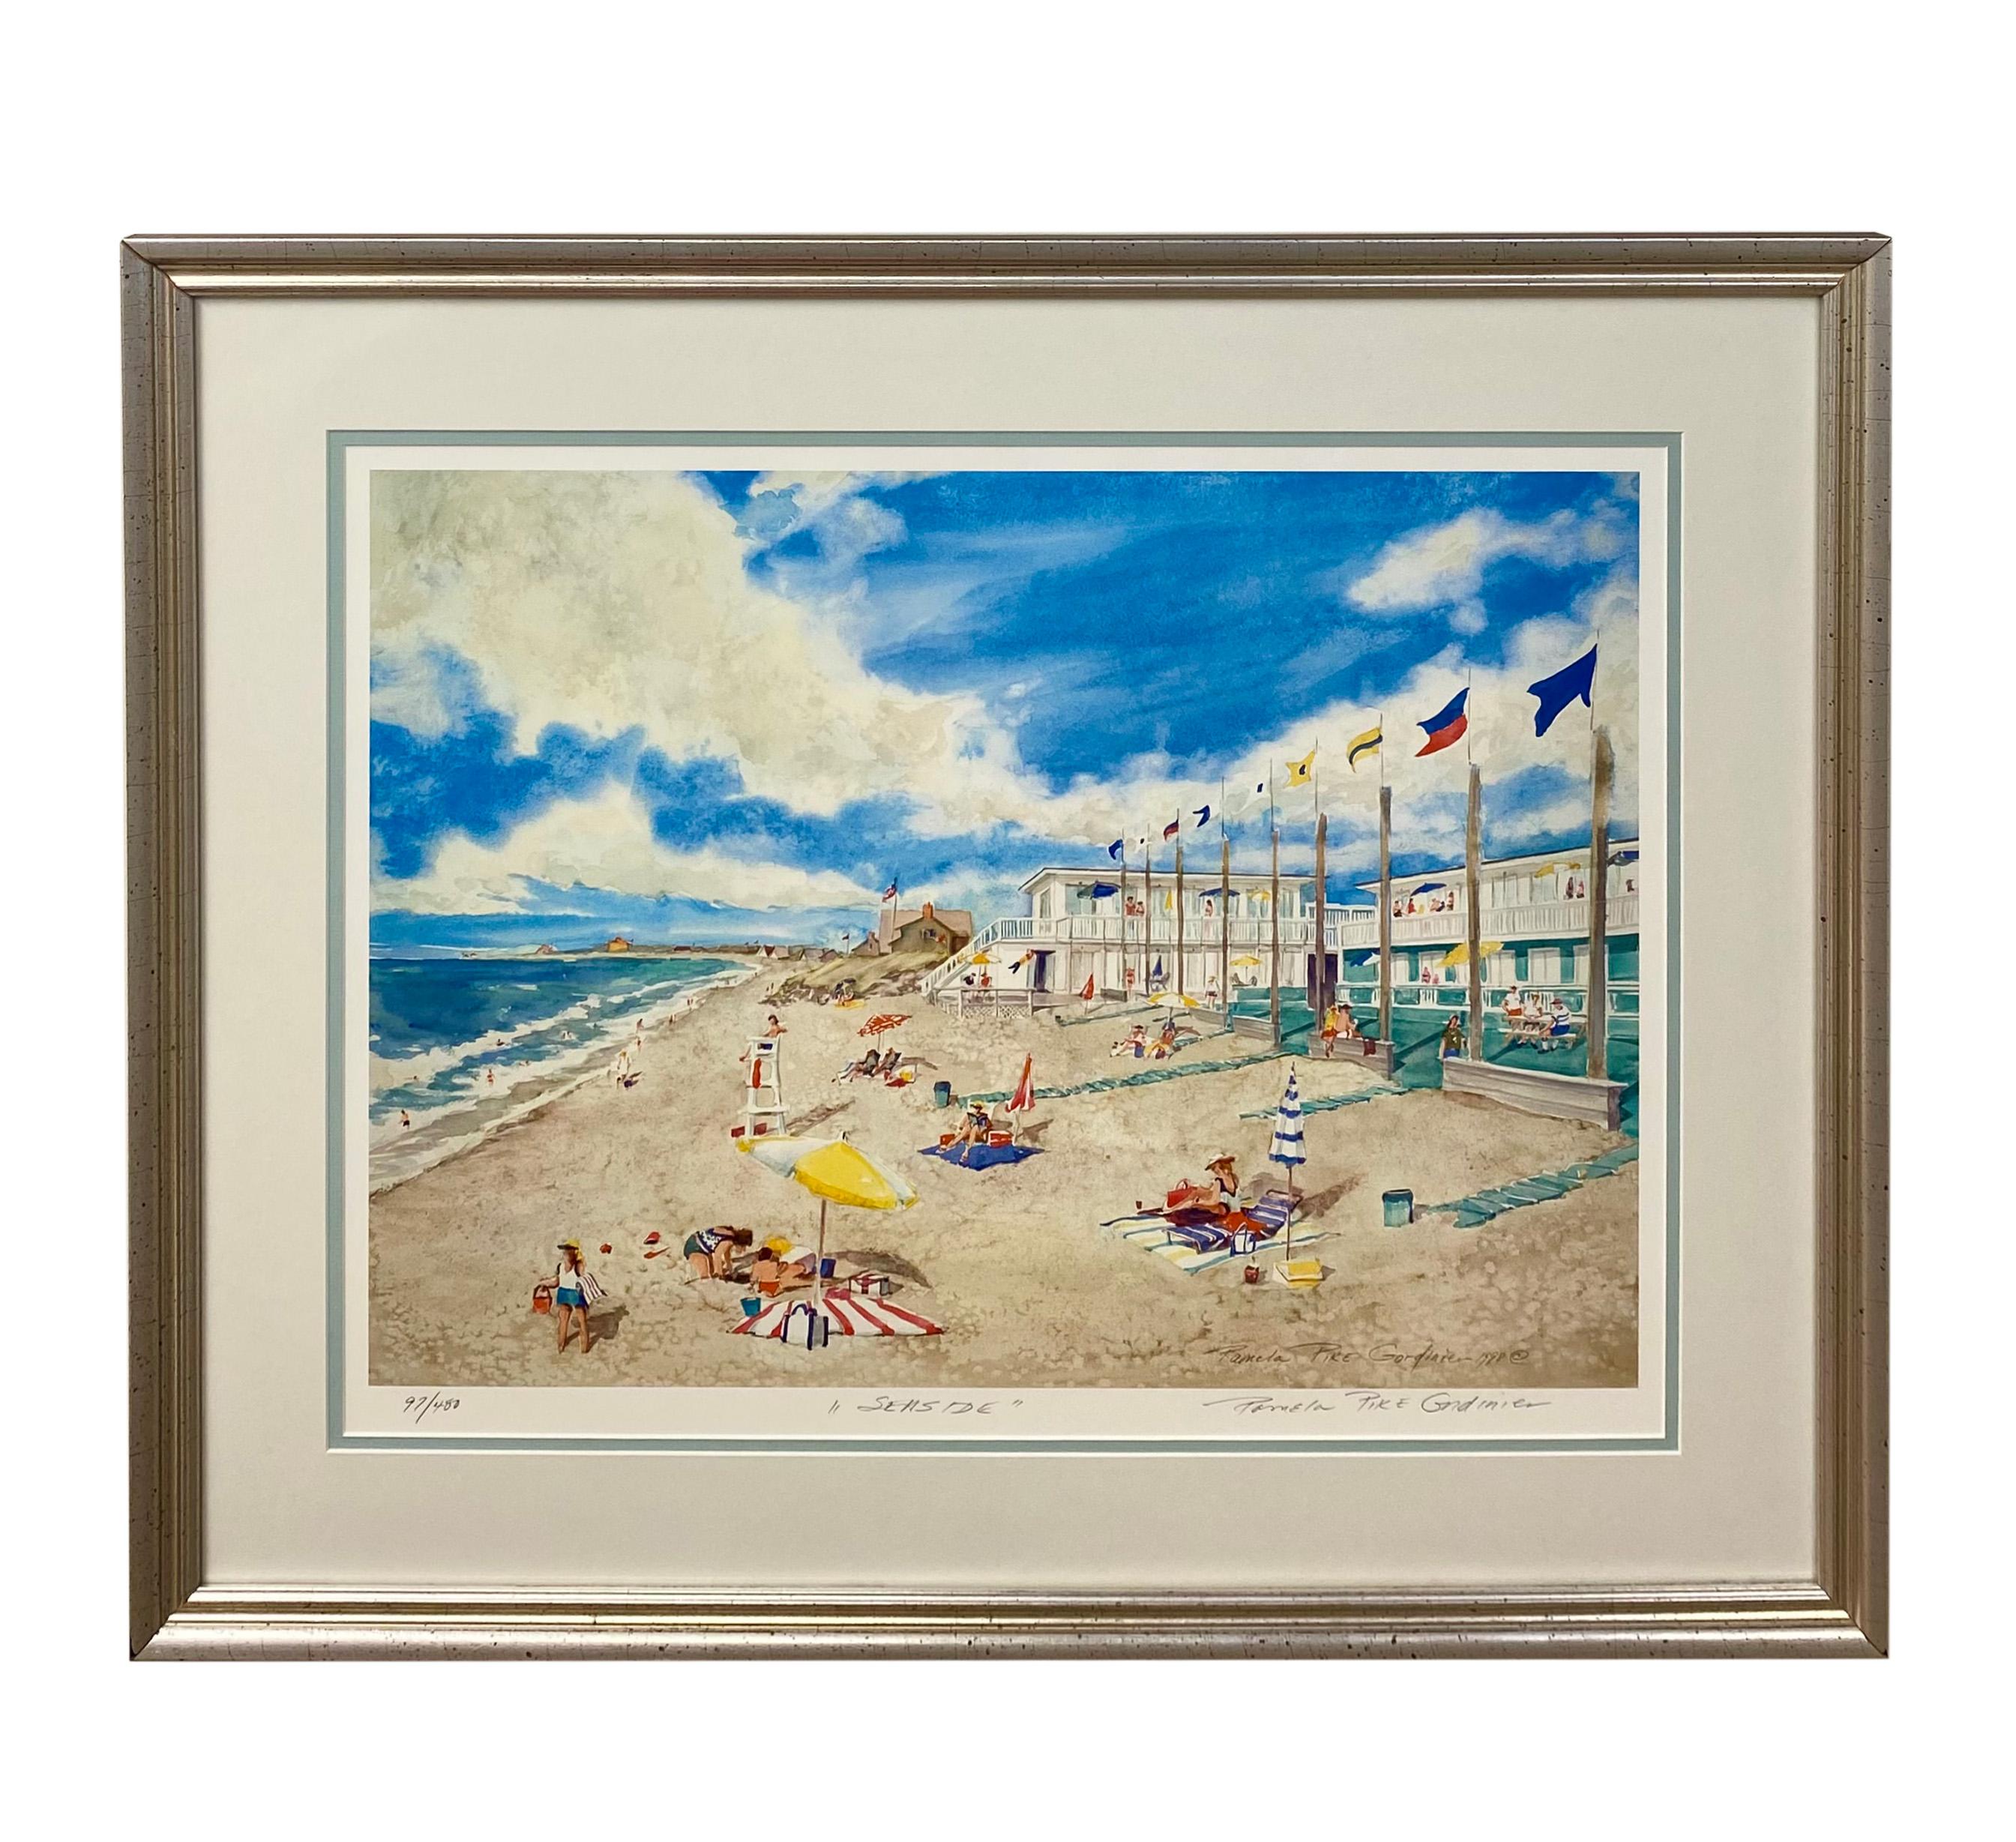 Une estampe impressionniste contemporaine intitulée " Sea Side " de Pamela Pike Gordinier (américaine) numérotée 97 sur 450 et datée de 1988. L'estampe représente une scène estivale de plage montrant des personnes profitant du bord de mer. Le tirage